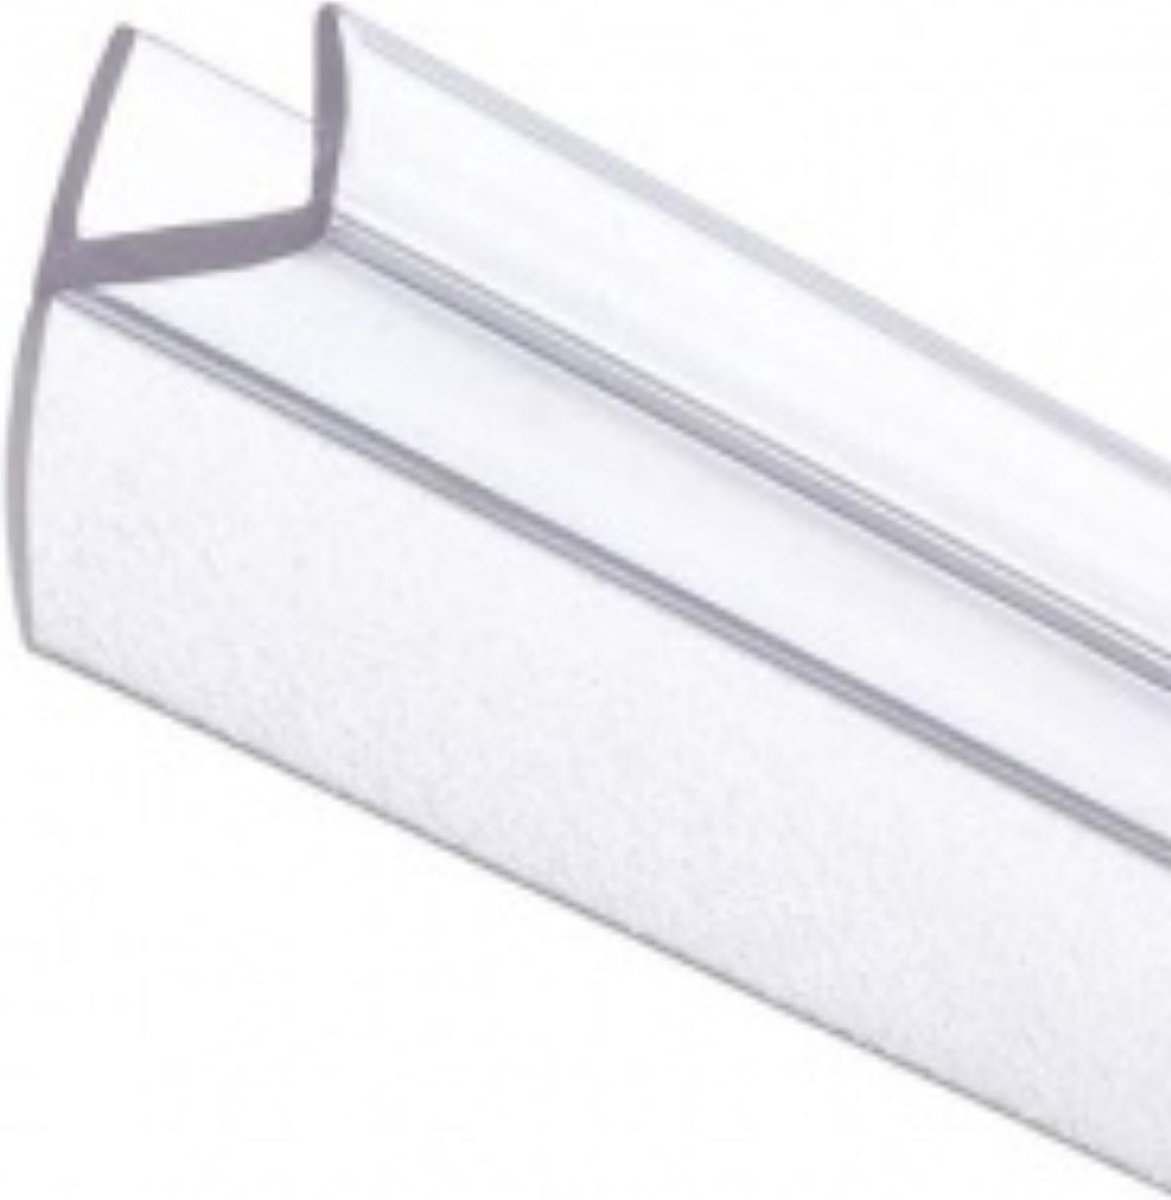 Joint de porte de douche pour épaisseur de verre 6-8 mm - Lekstrip Sill